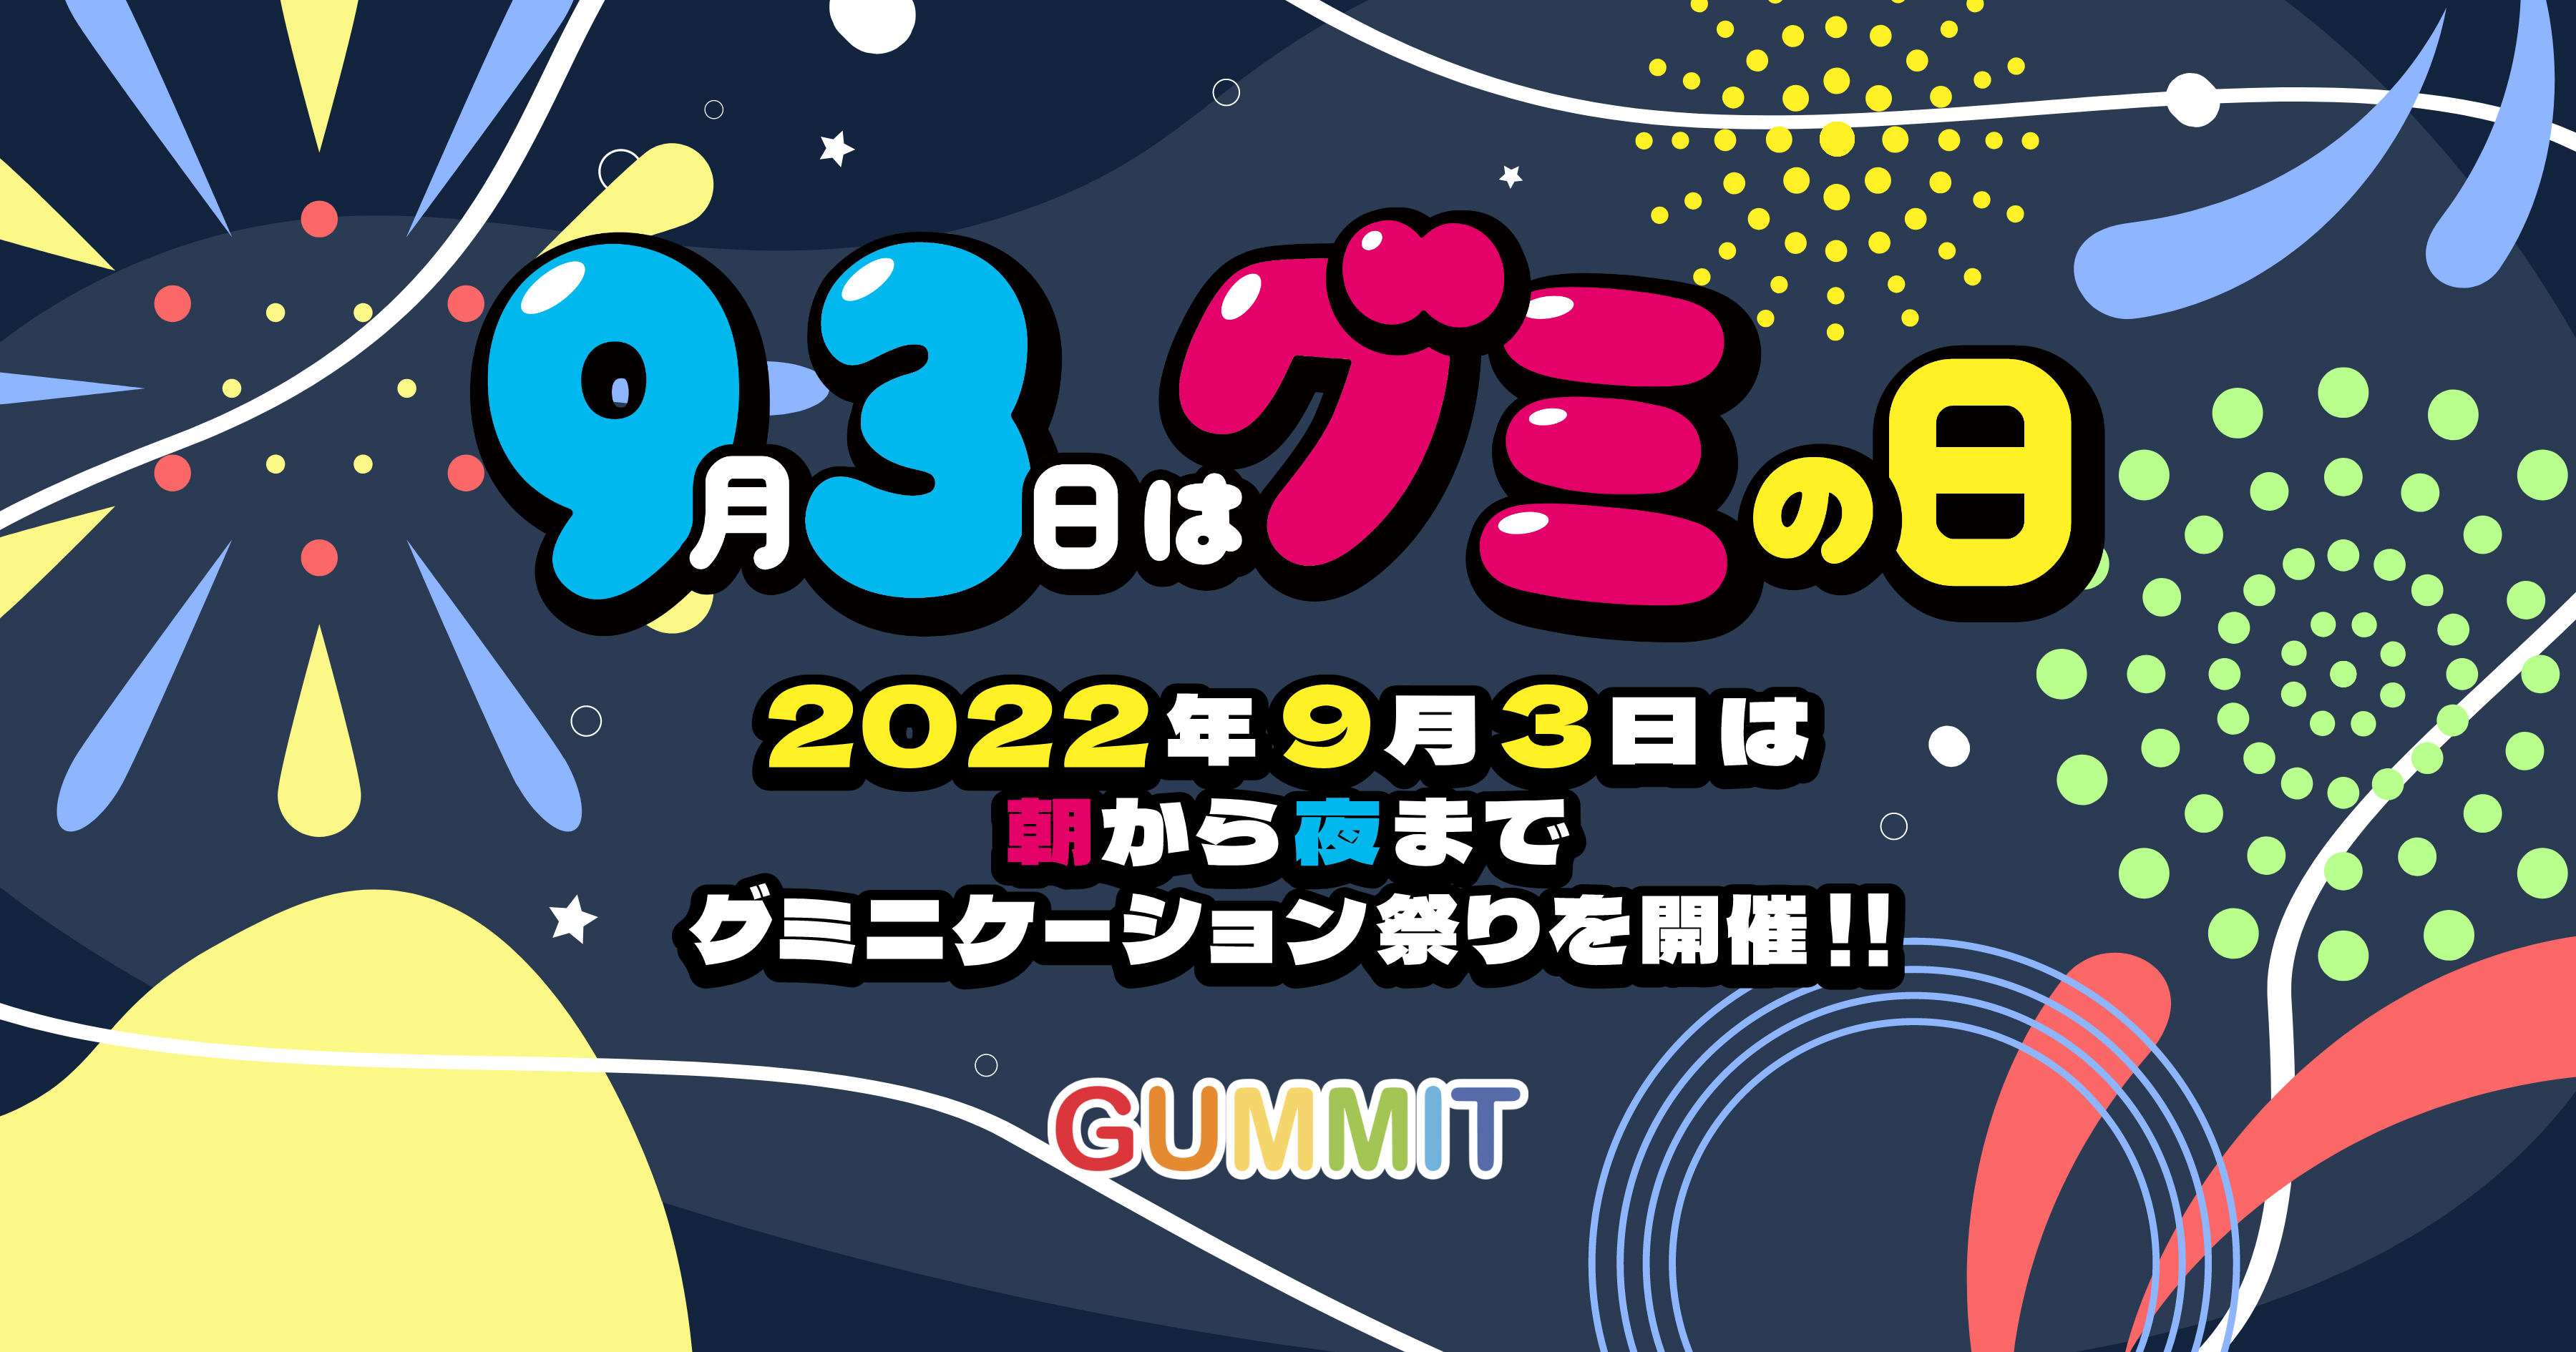 9月3日はグミの日 - 2022年9月3日は朝から夜までグミニケーション祭りを開催！！ GUMMIT